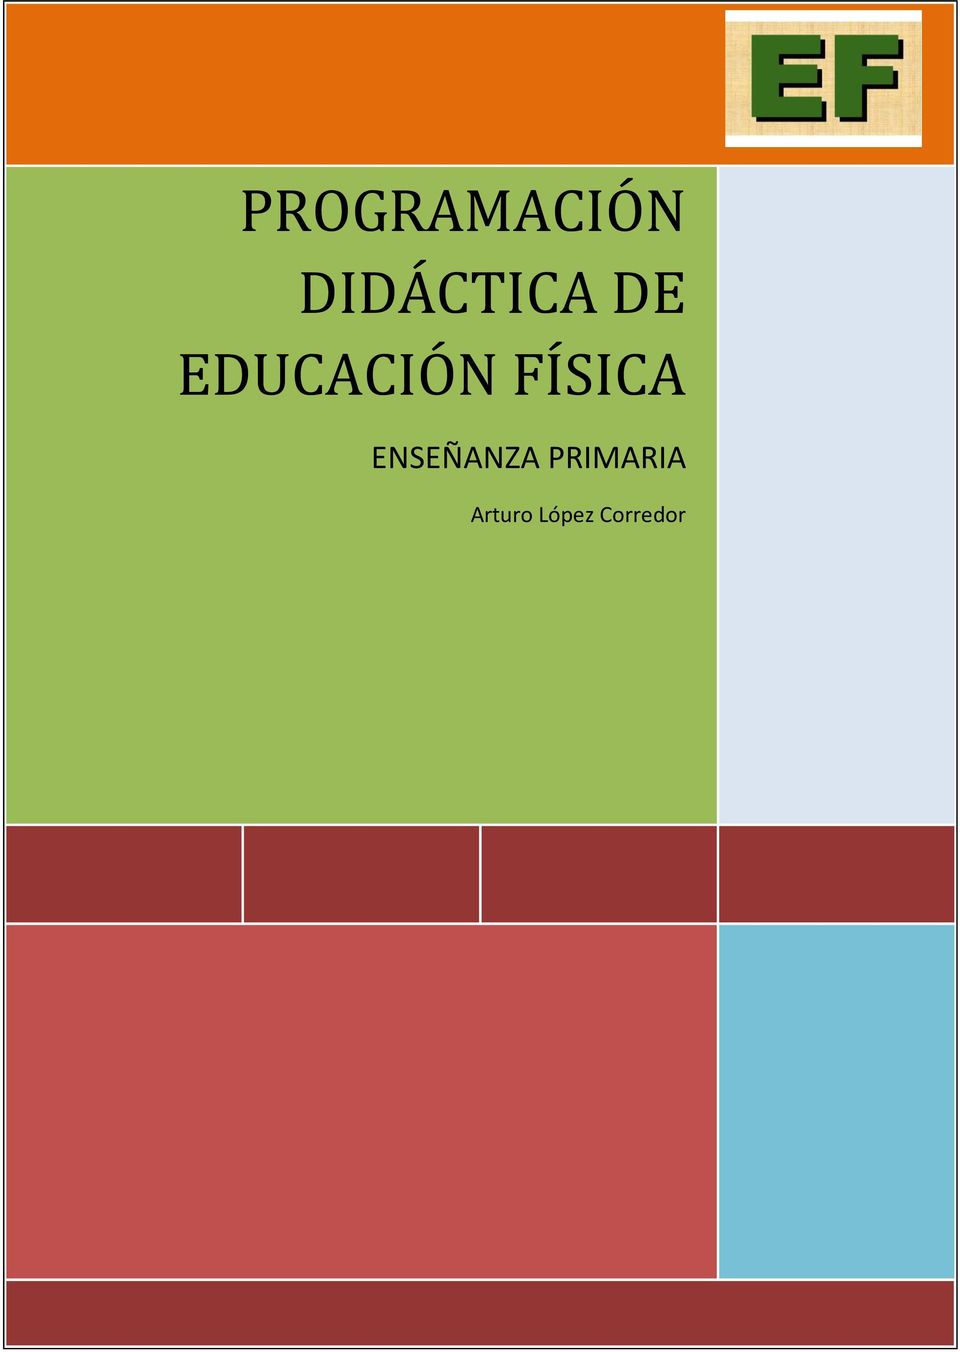 DIDÁCTICA DE EDUCACIÓN FÍSICA